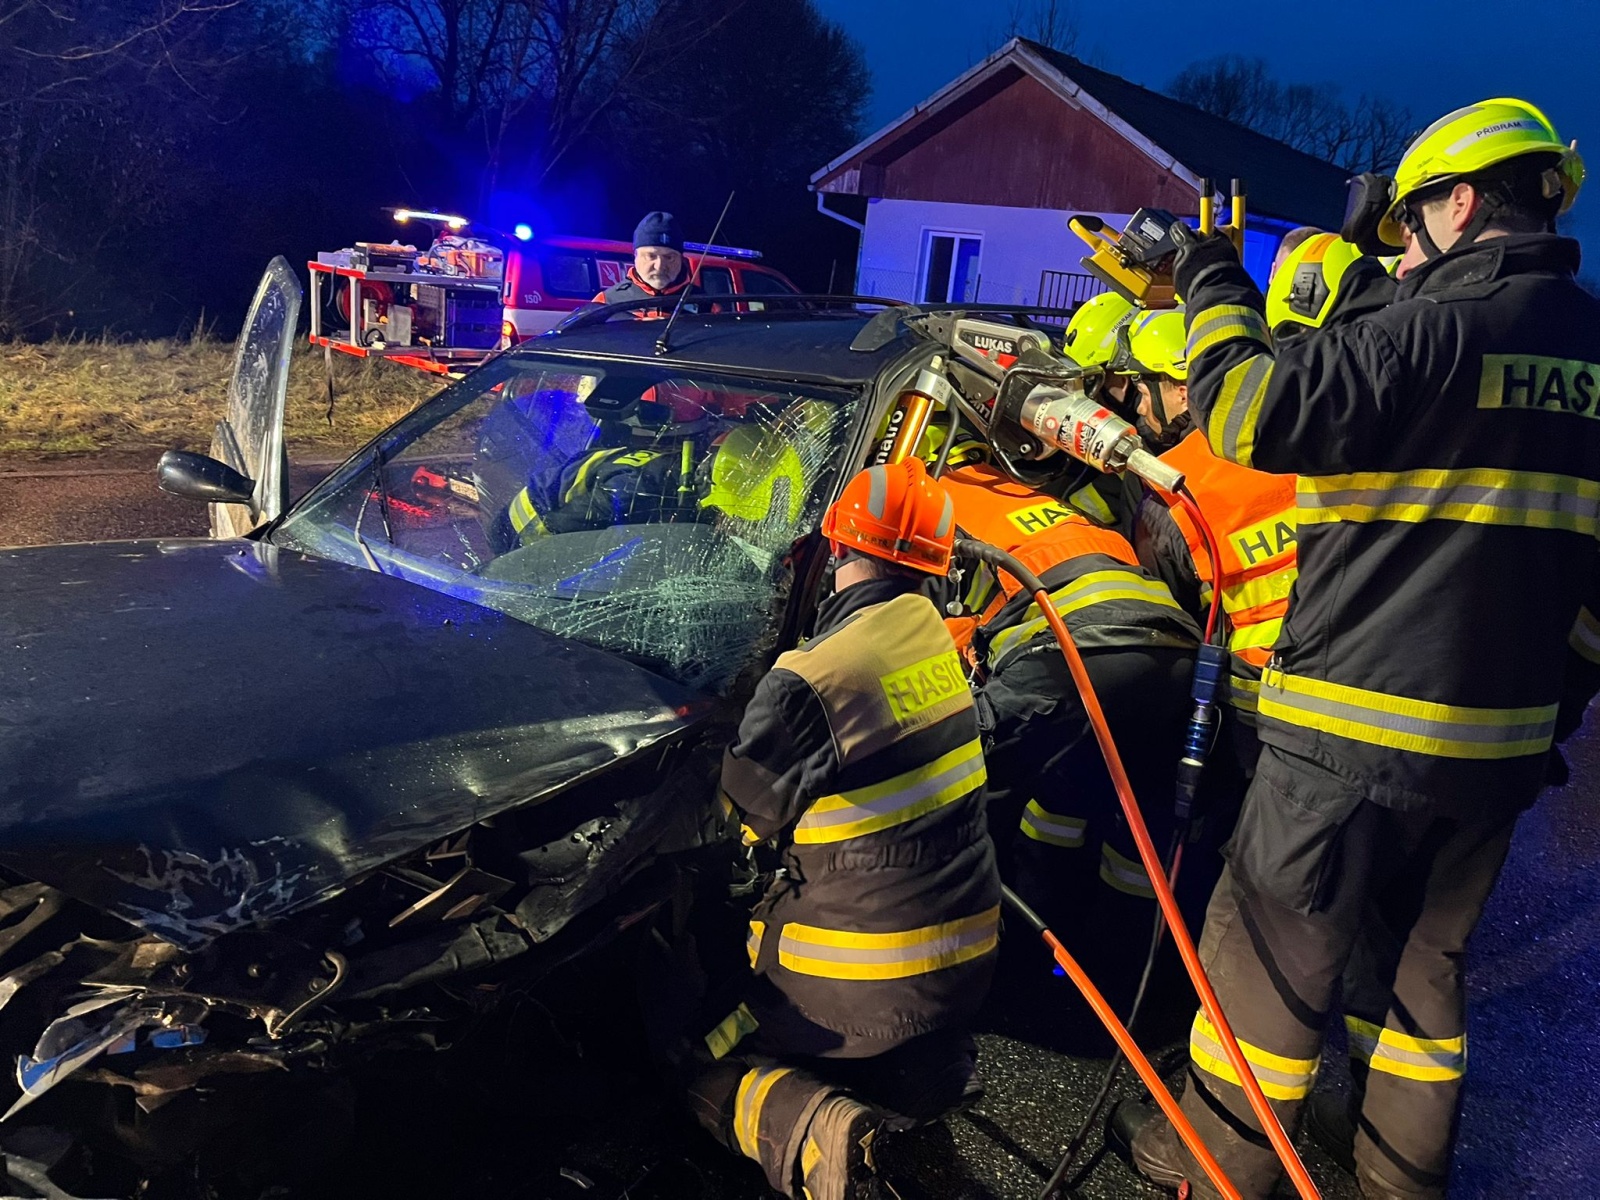 004-Vážná nehoda dvou osobních vozidel u Březnice na Příbramsku.jpeg